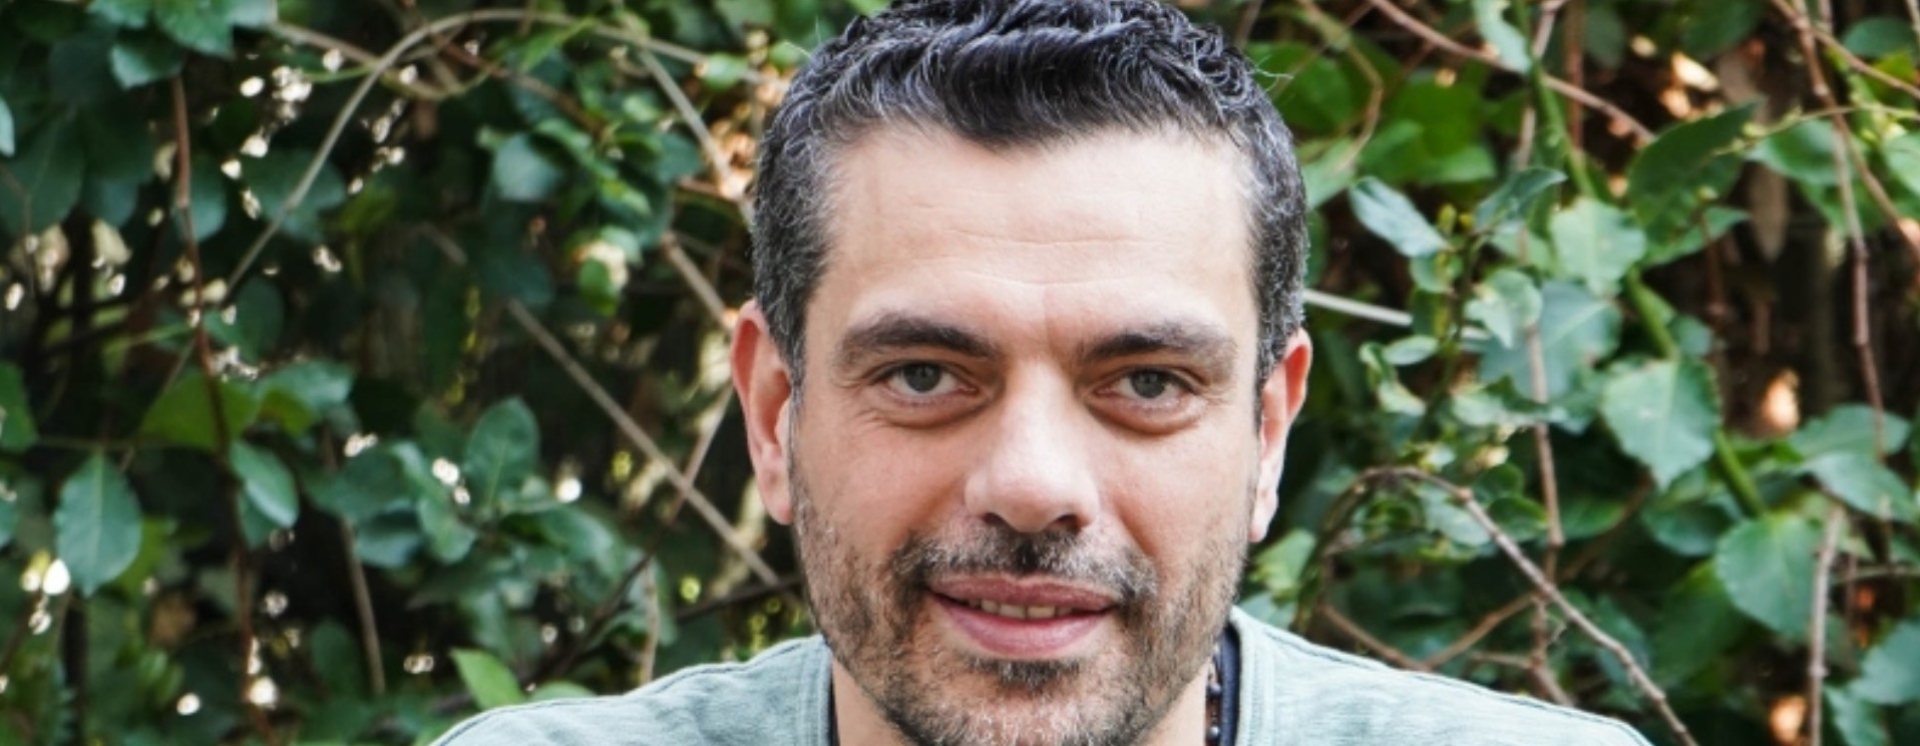 Τσαρτσαρής στο Gazzetta: «Με τον Διαμαντίδη δεν κοιμόμασταν από την πίεση κι ας είχαμε κατακτήσει τα πάντα»